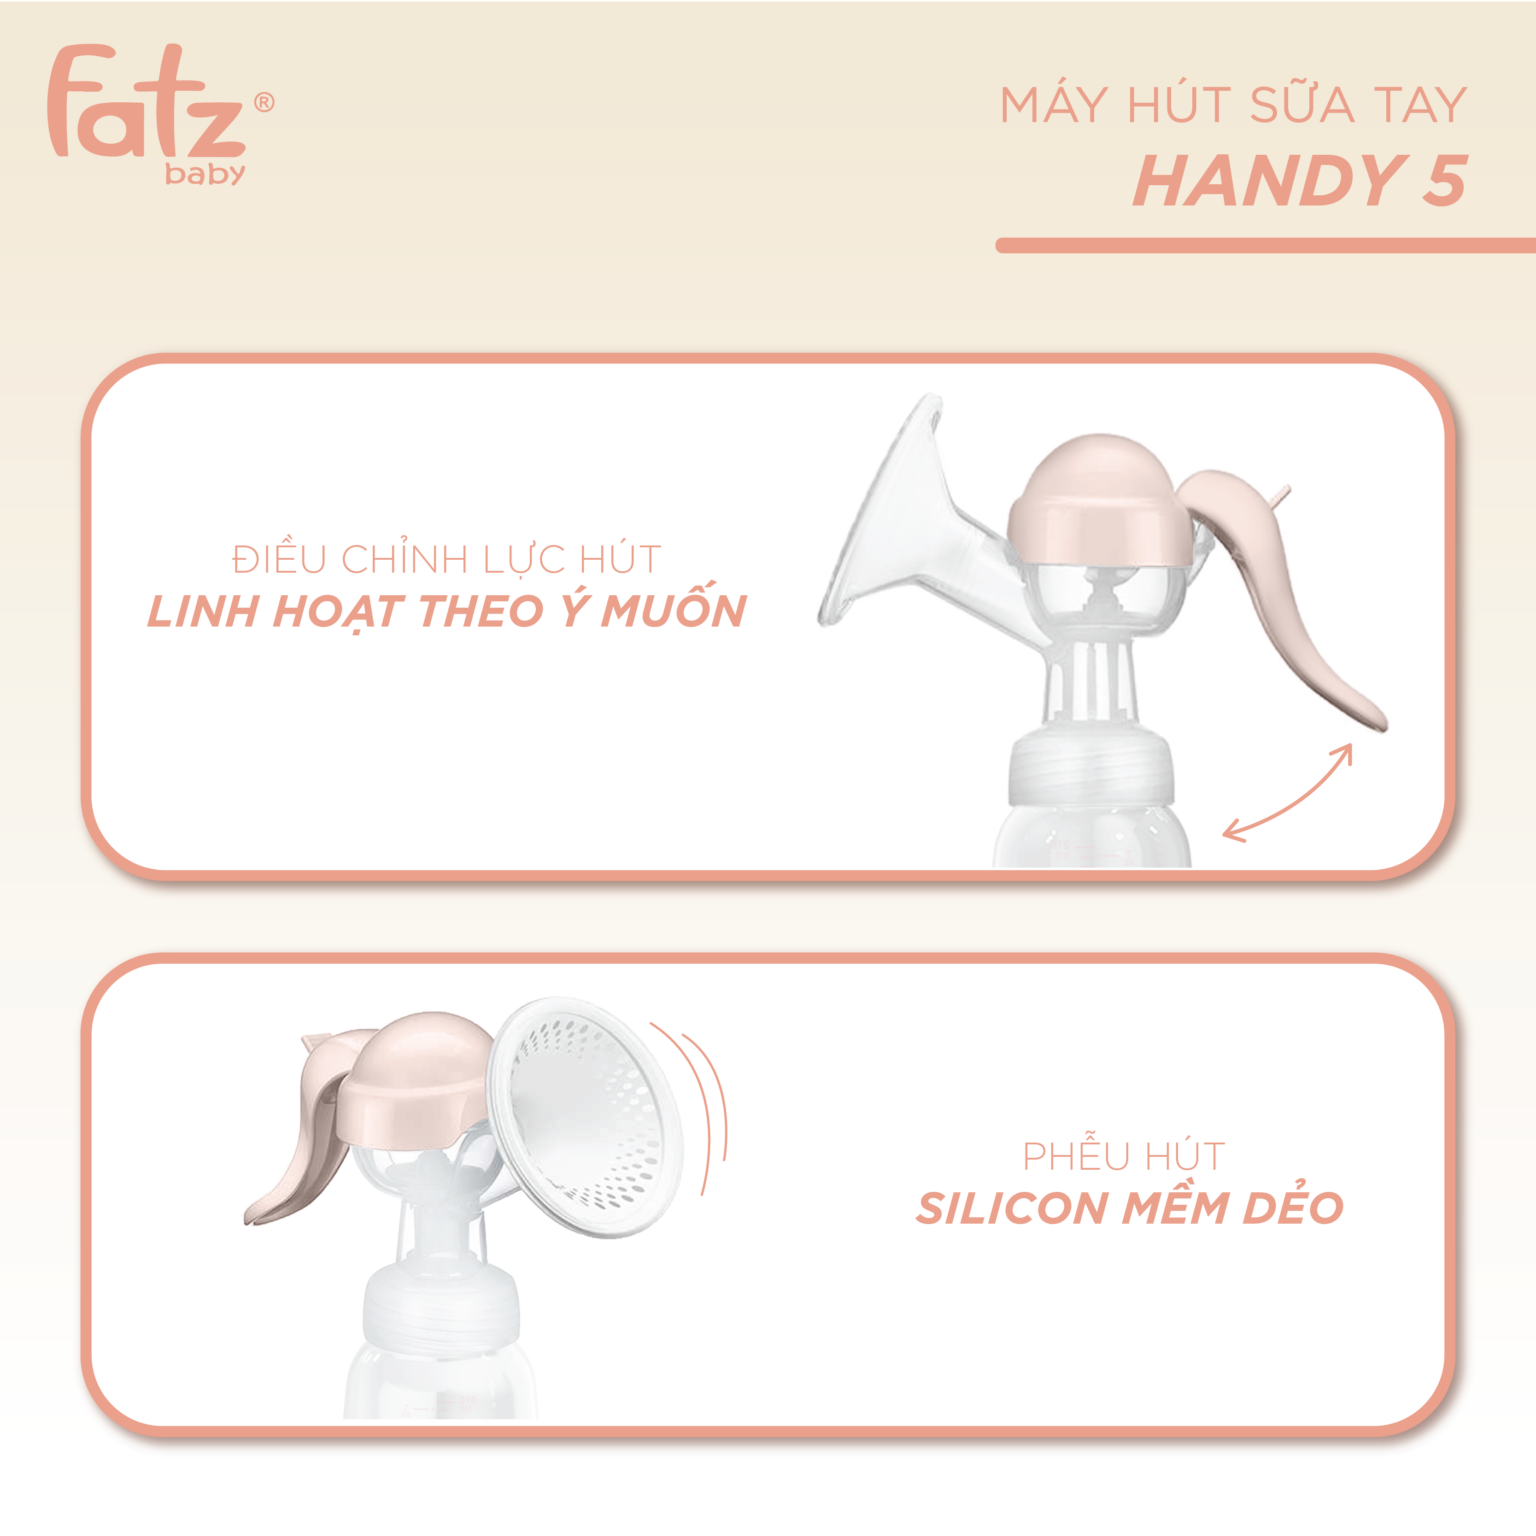 Máy hút sữa tay Fatzbaby Handy 5 FB1011HY - Bảo hành 12 tháng